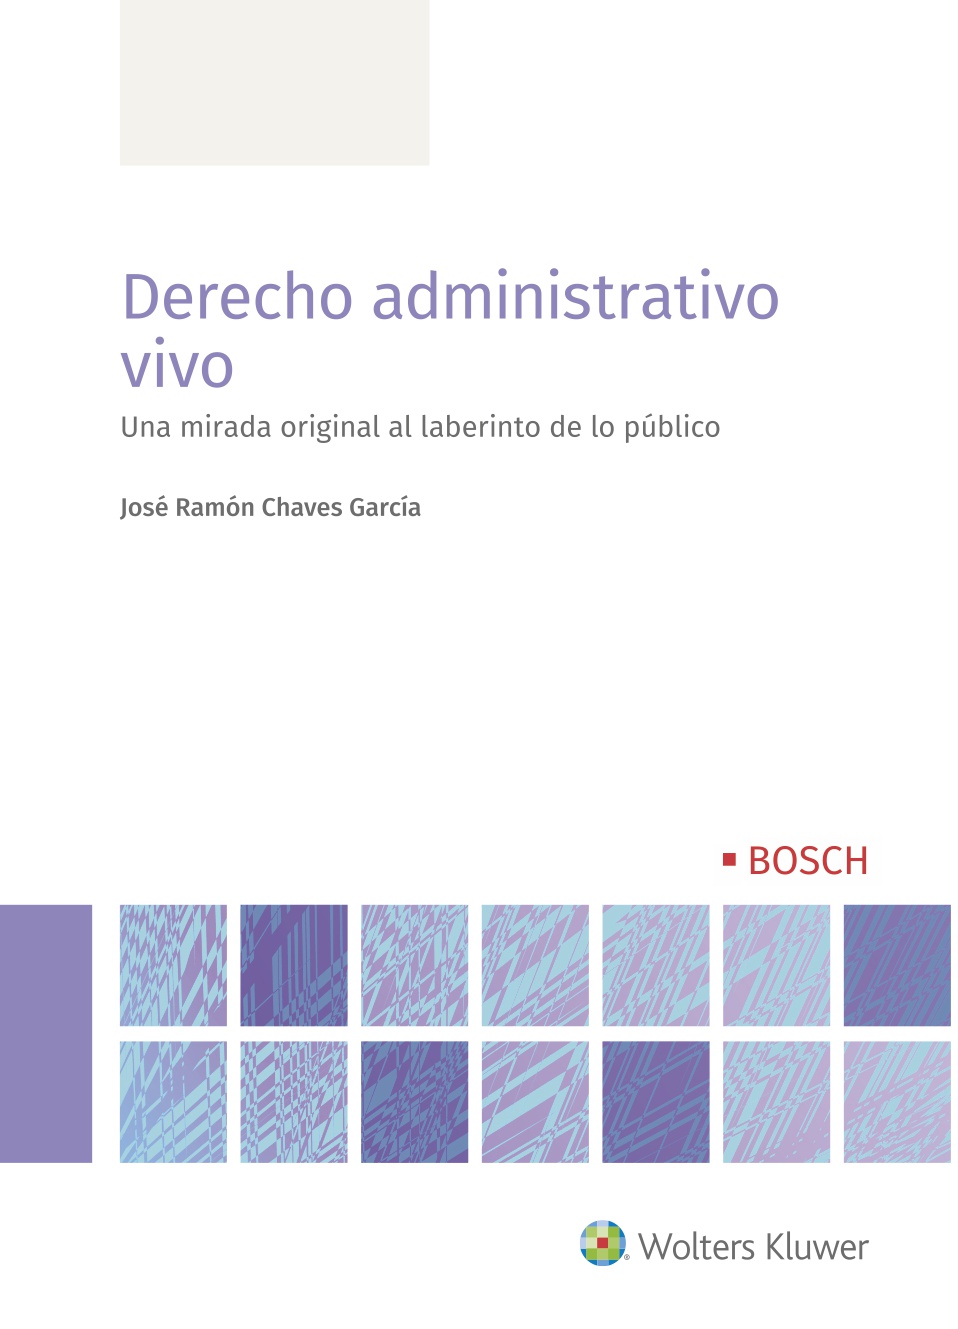 Derecho administrativo vivo   «Una mirada original al laberinto de lo público»